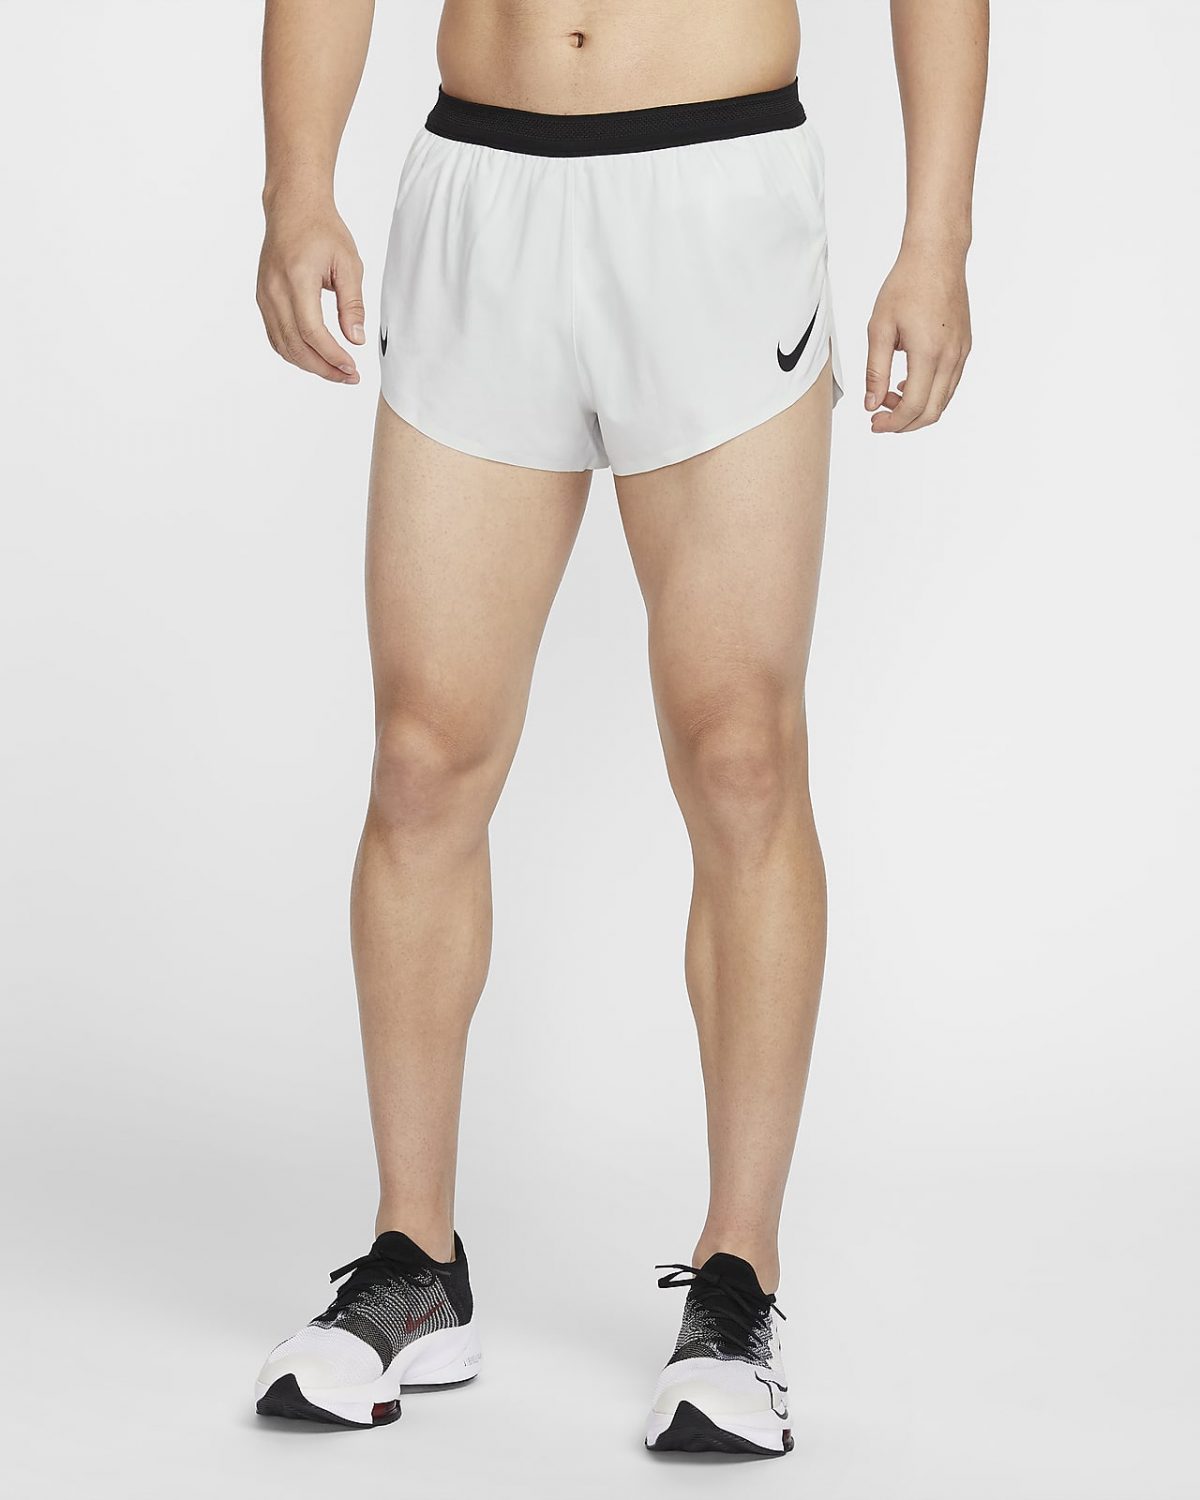 Мужские шорты Nike AeroSwift черные фото